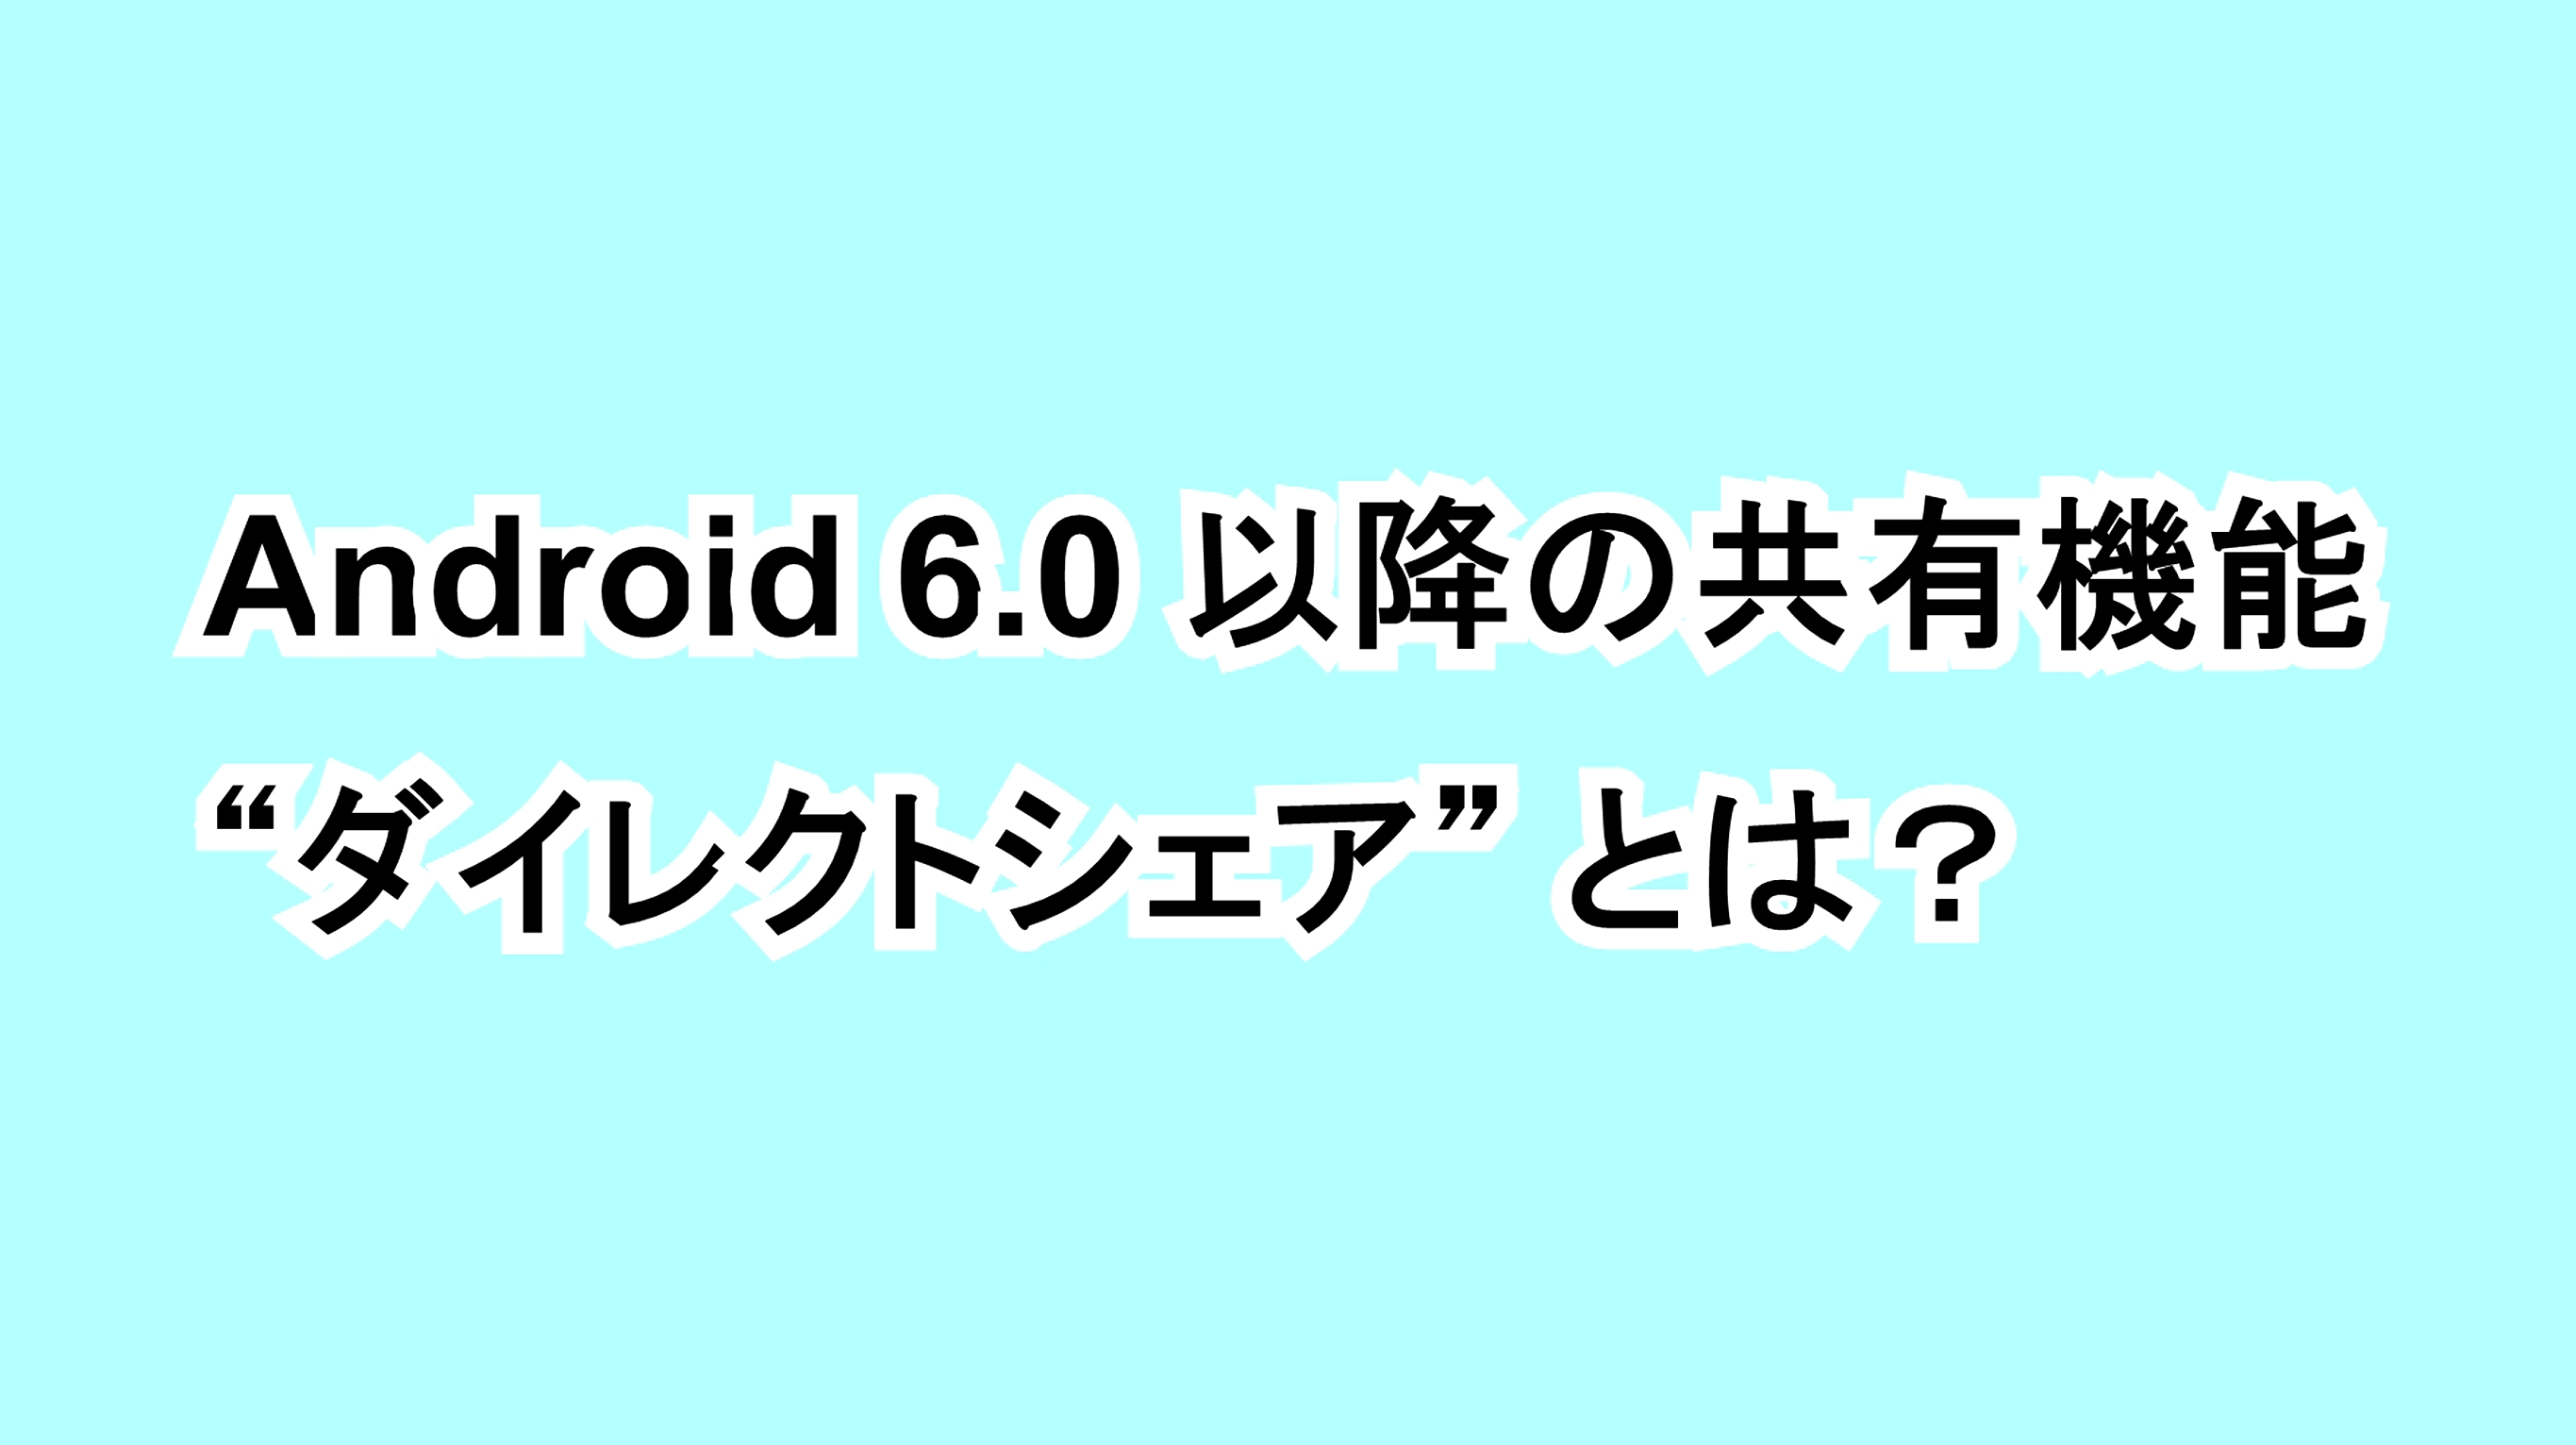 Android 6.0以降の共有機能“ダイレクトシェア”とは？